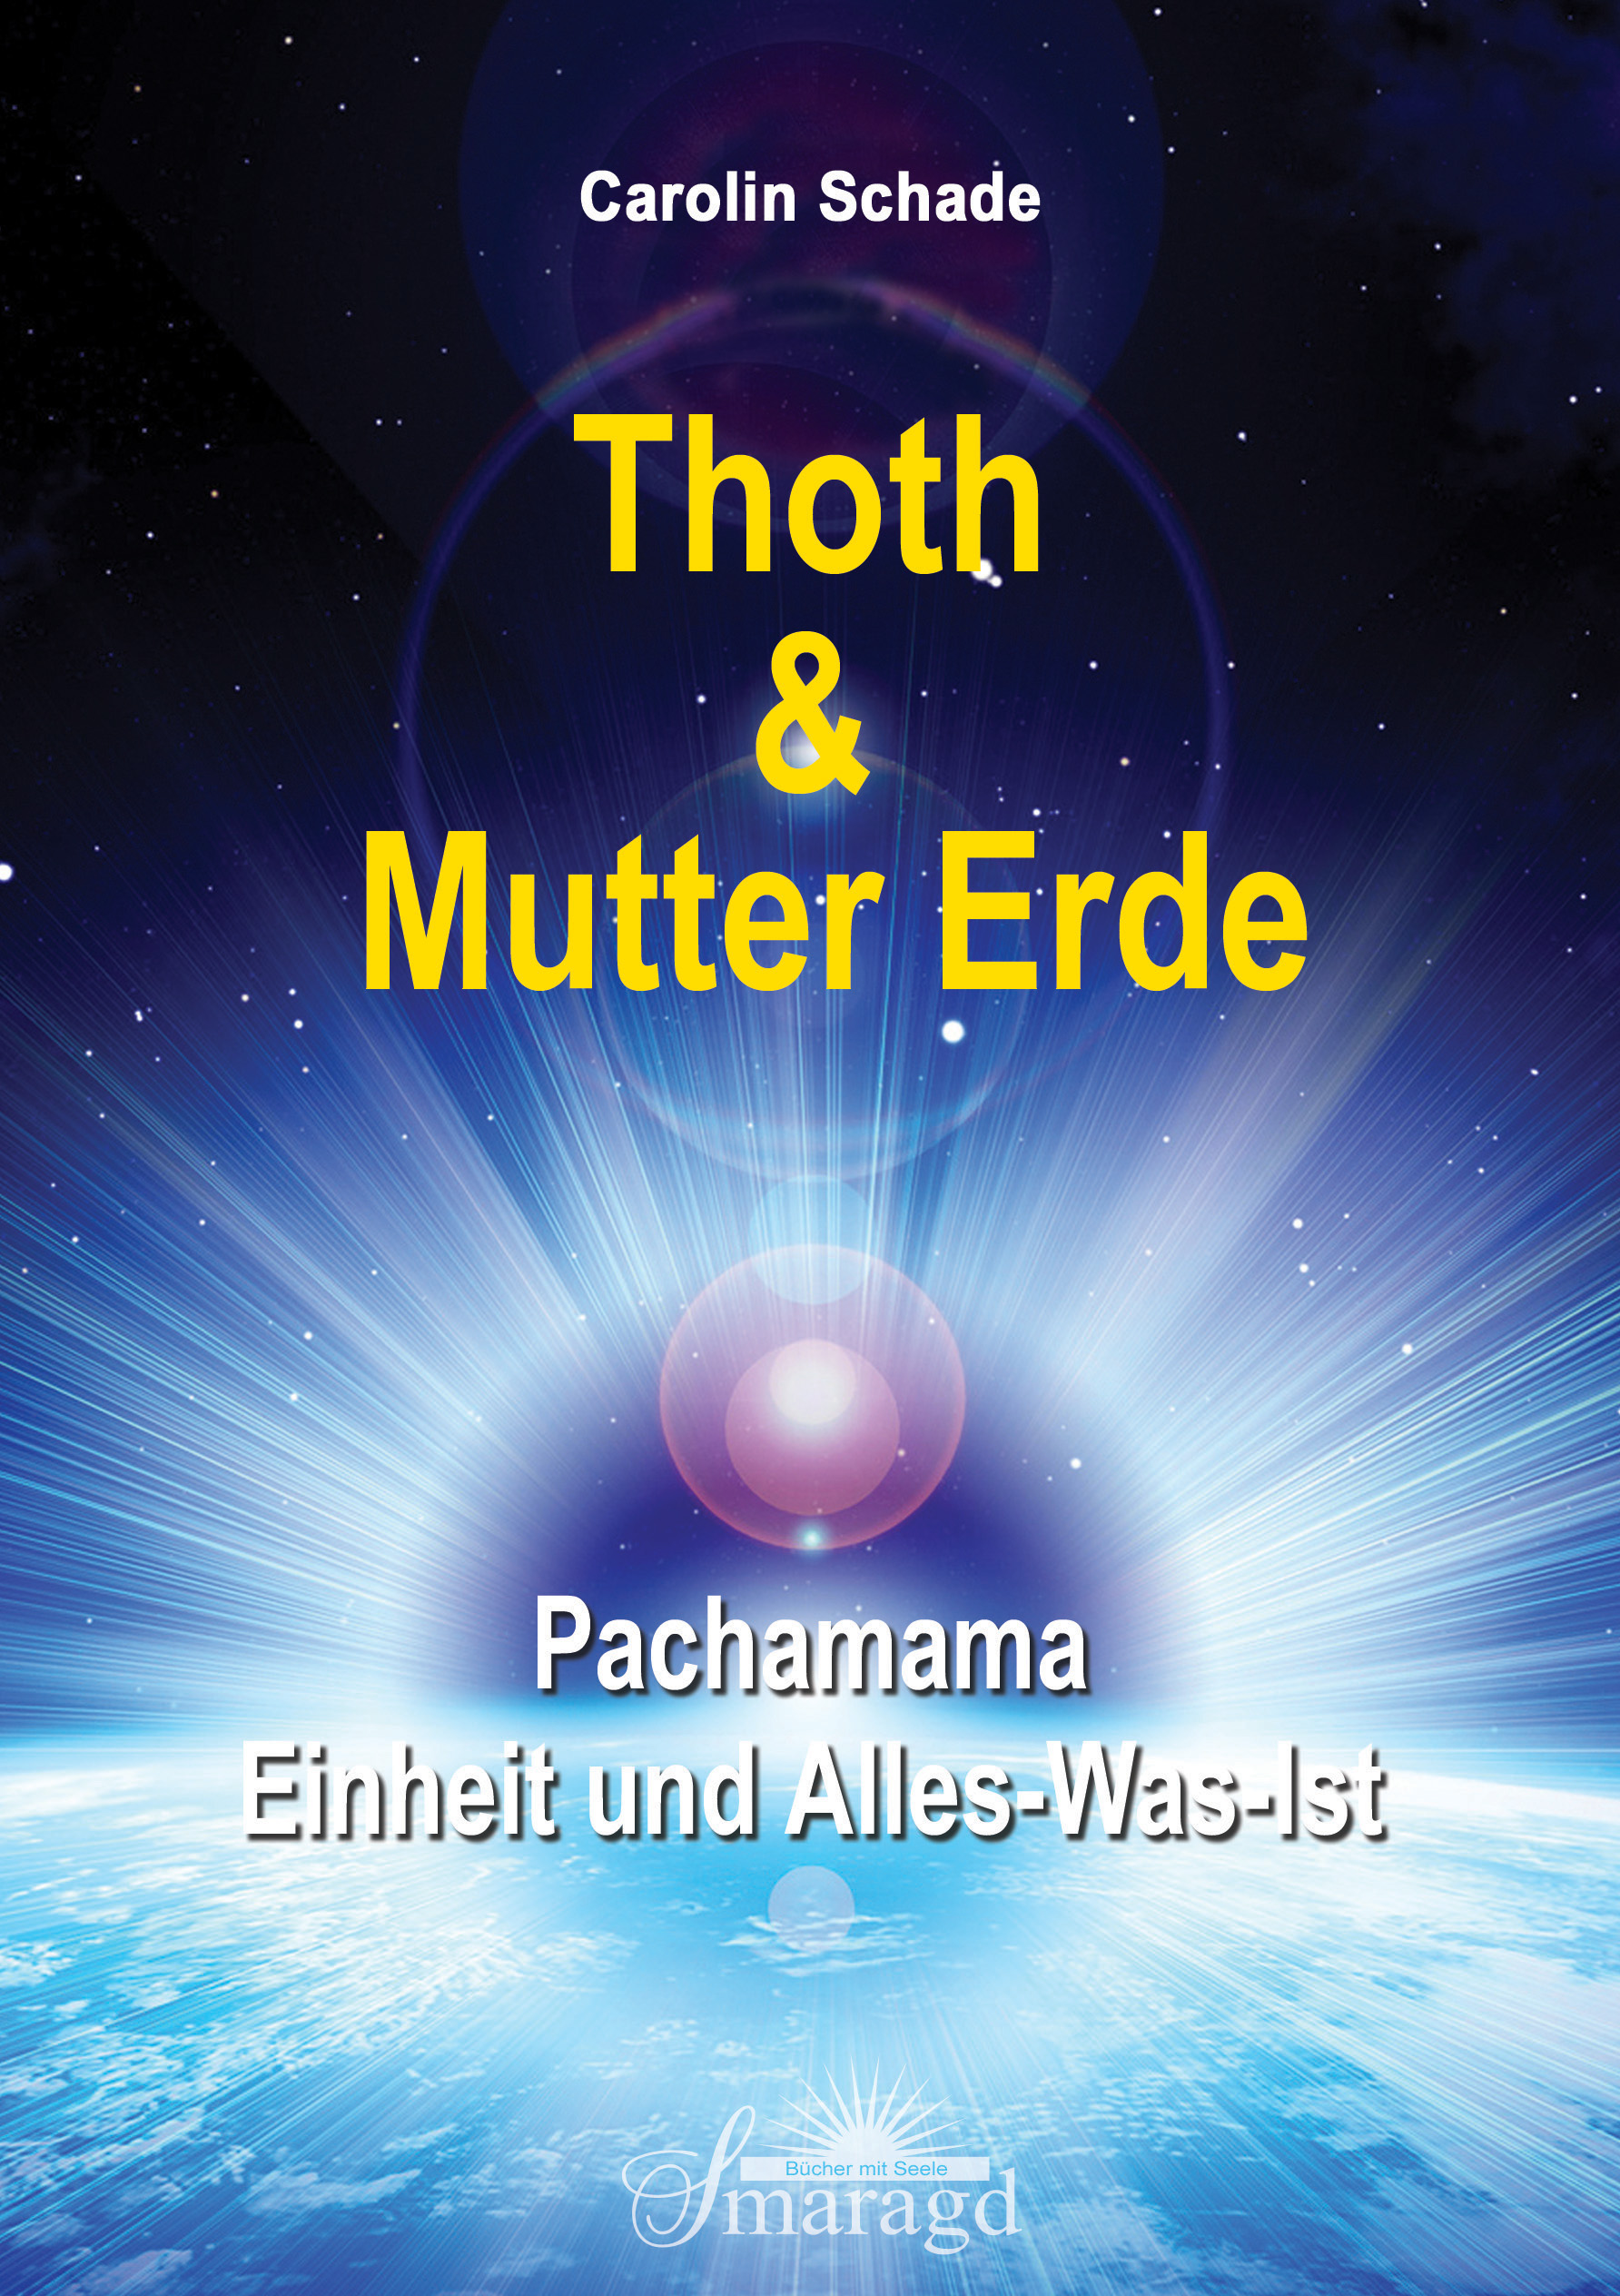 Thoth & Mutter Erde: Pachamama - Einheit und Alles-was-ist Carolin Schade - Carolin Schade